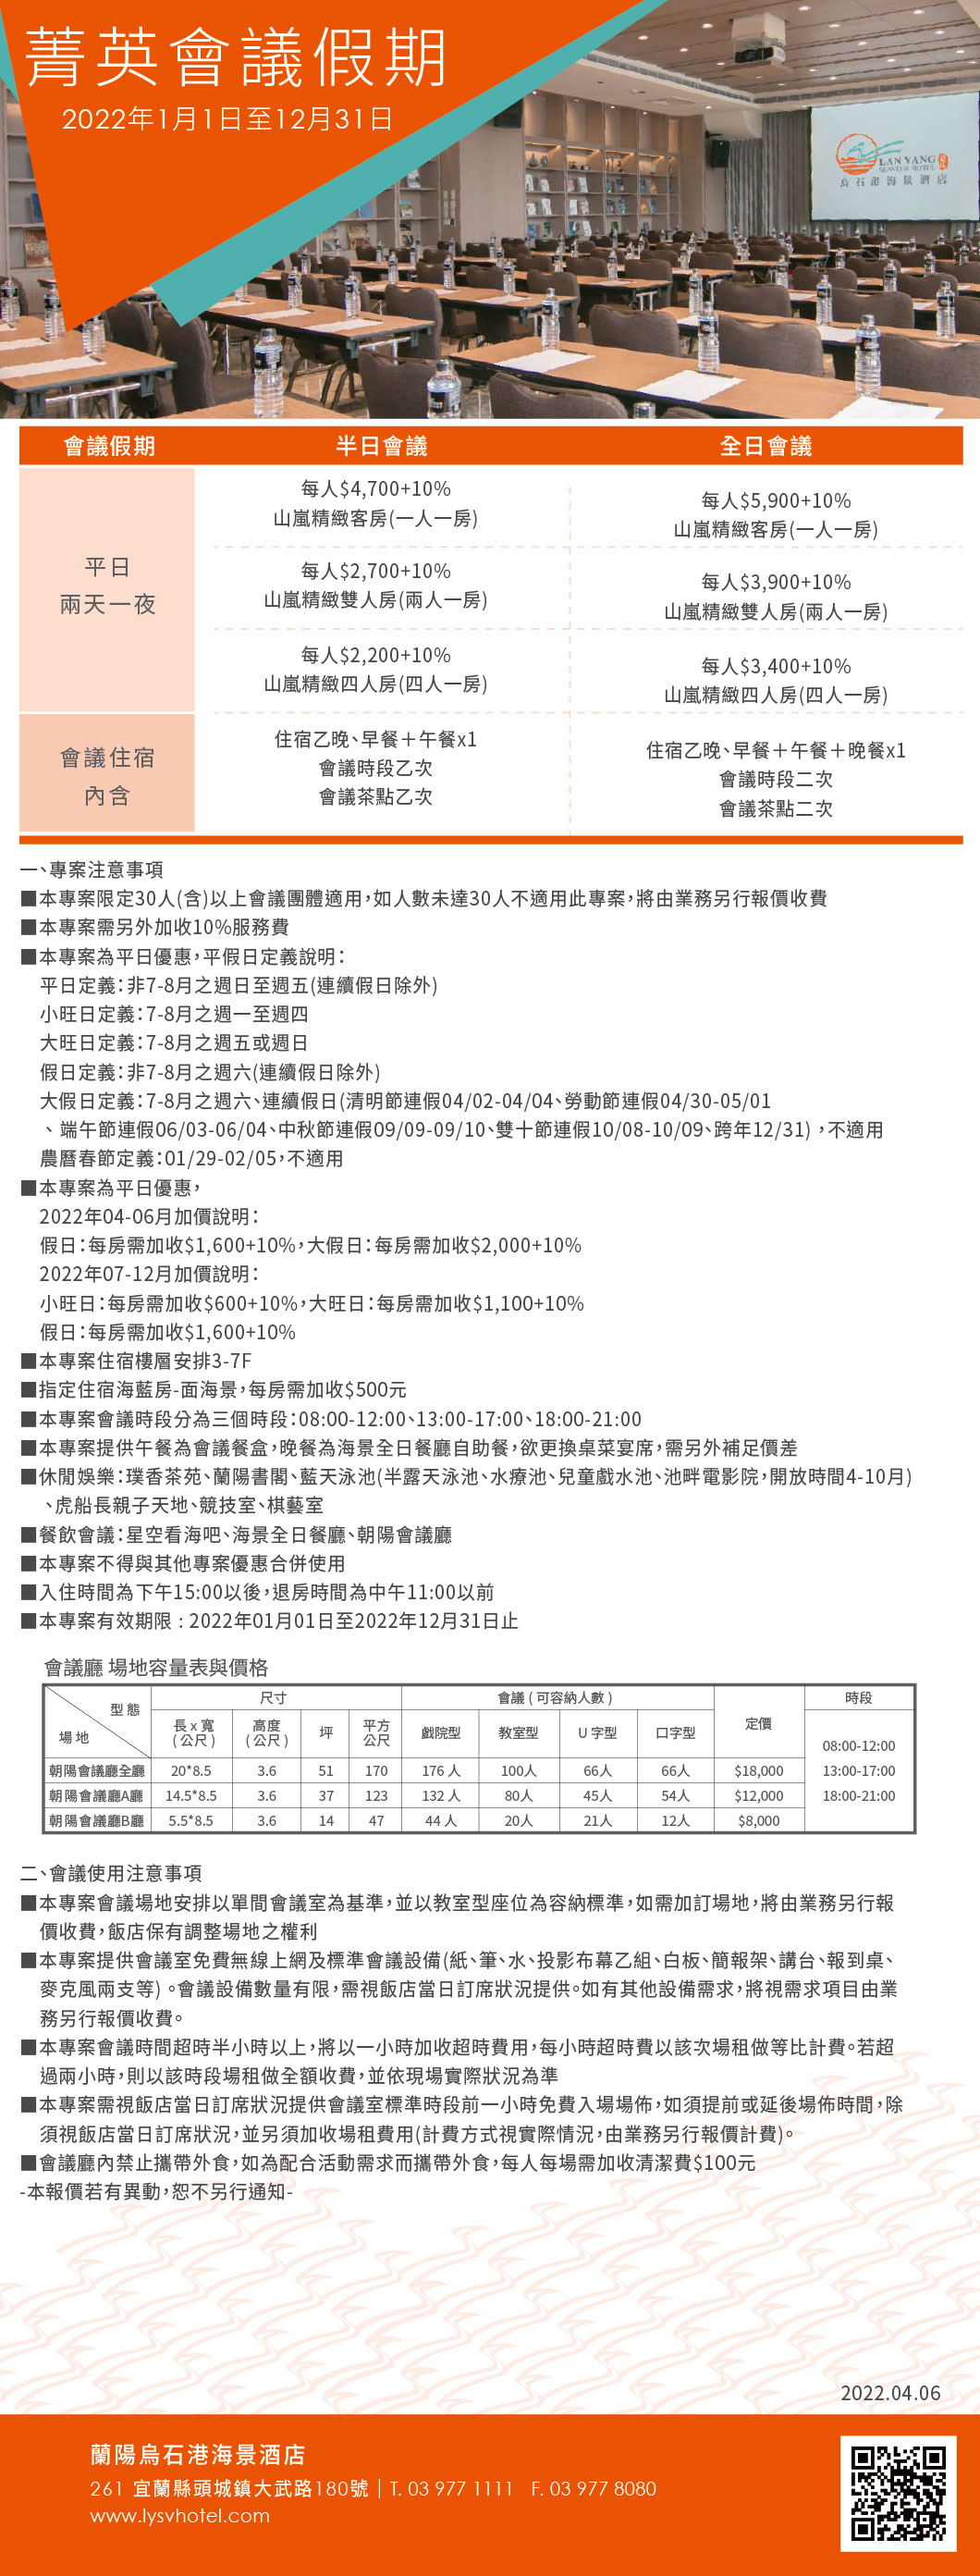 2022-蘭陽烏石港海景酒店-菁英會議假期(更正一)